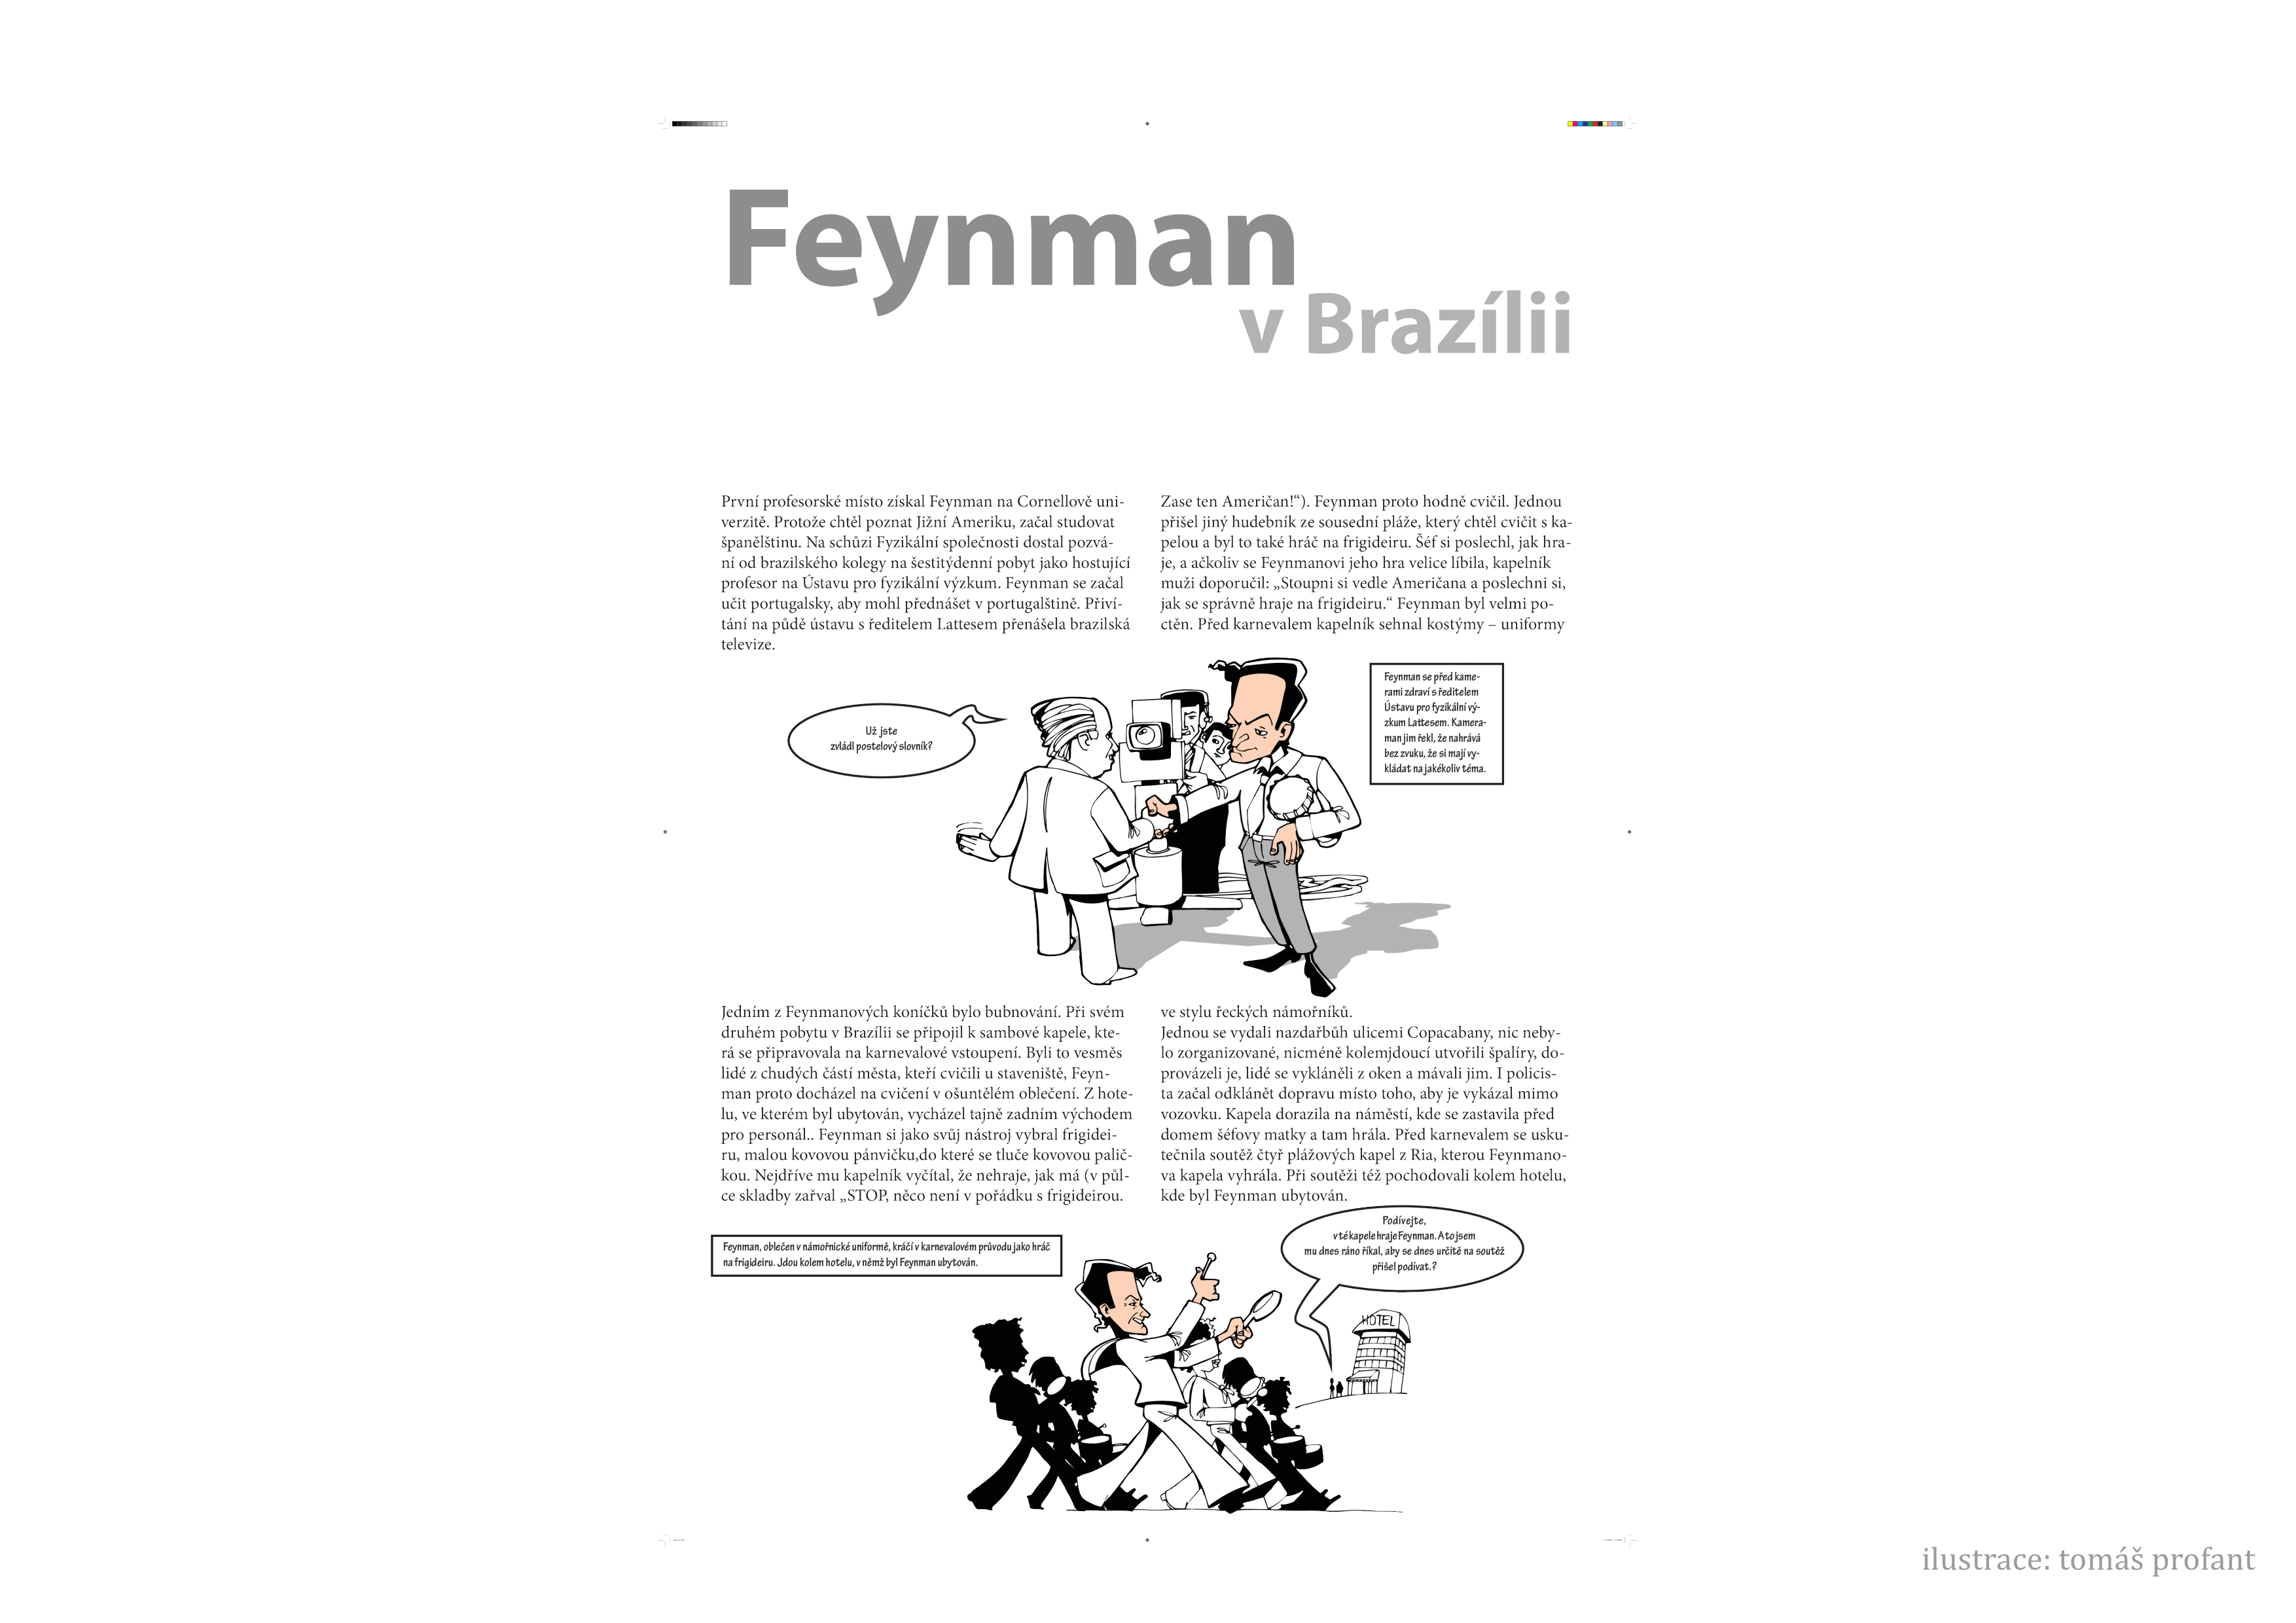 _images/feynman-str%C3%A1nka010.png